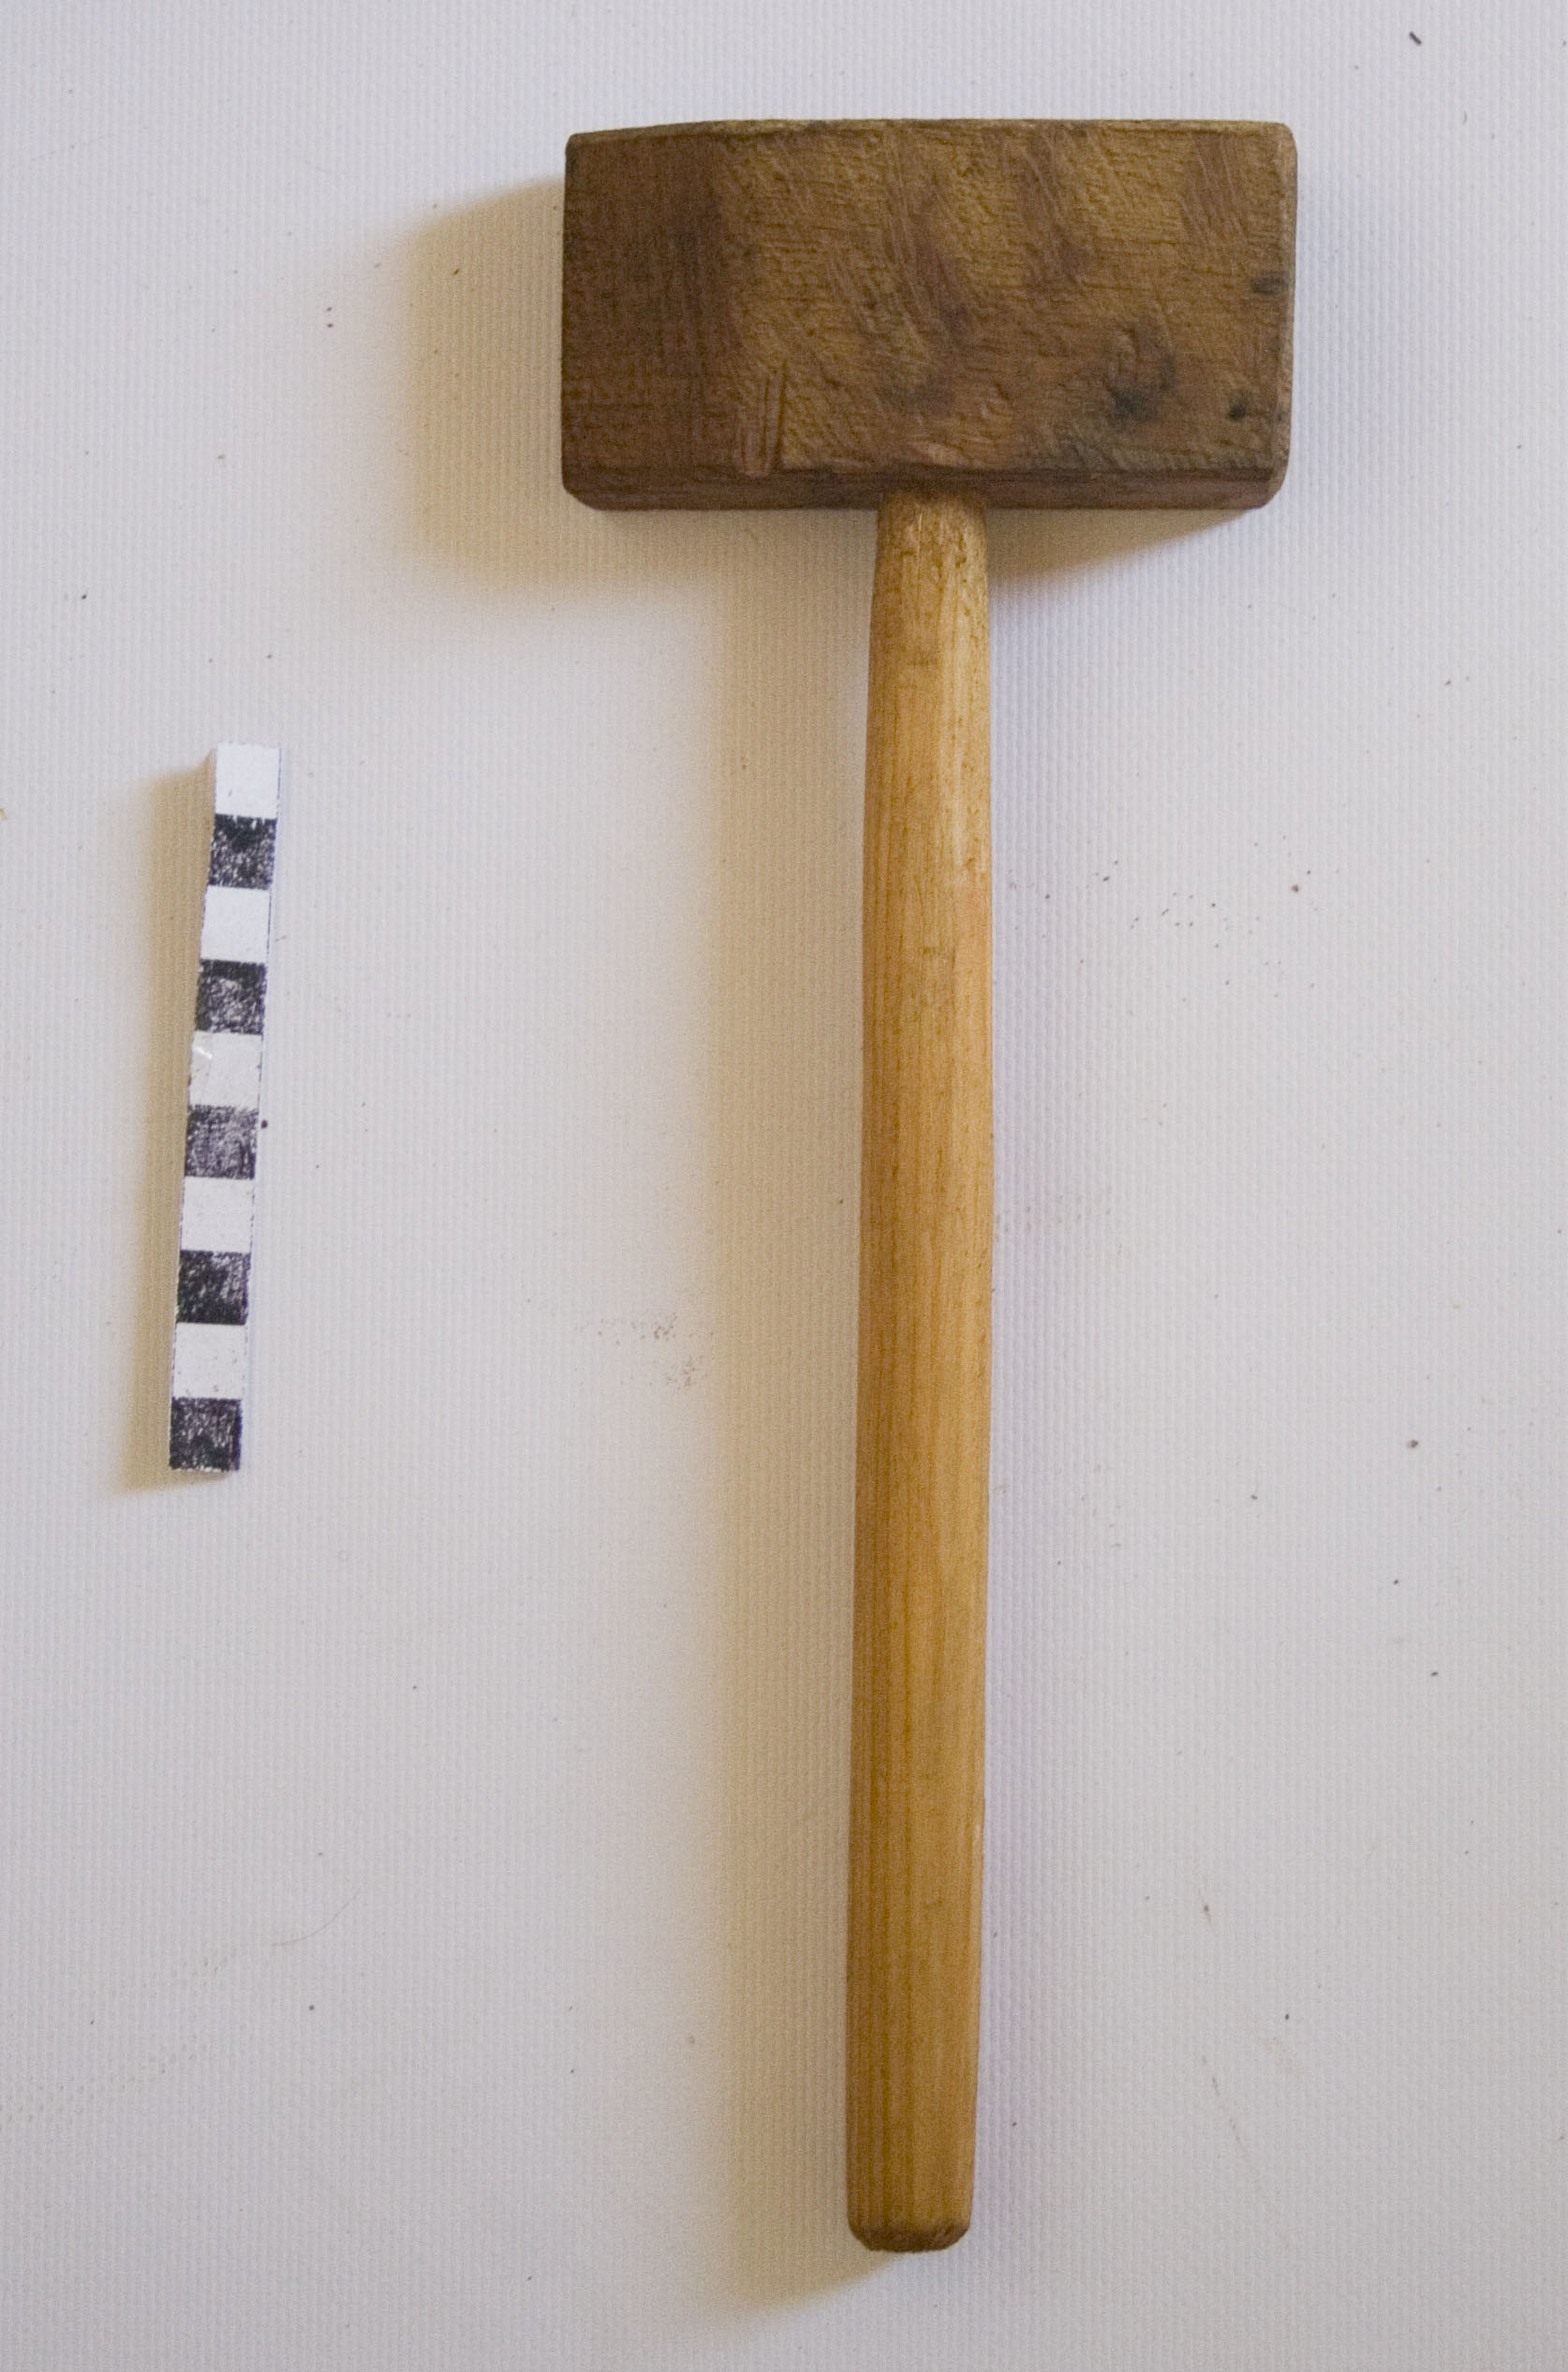 Martellino in legno, martelli, strumenti del falegname, bottaio di Cao Francesco (falegname intagliatore) - bottega di falegname (sec. XX prima metà)